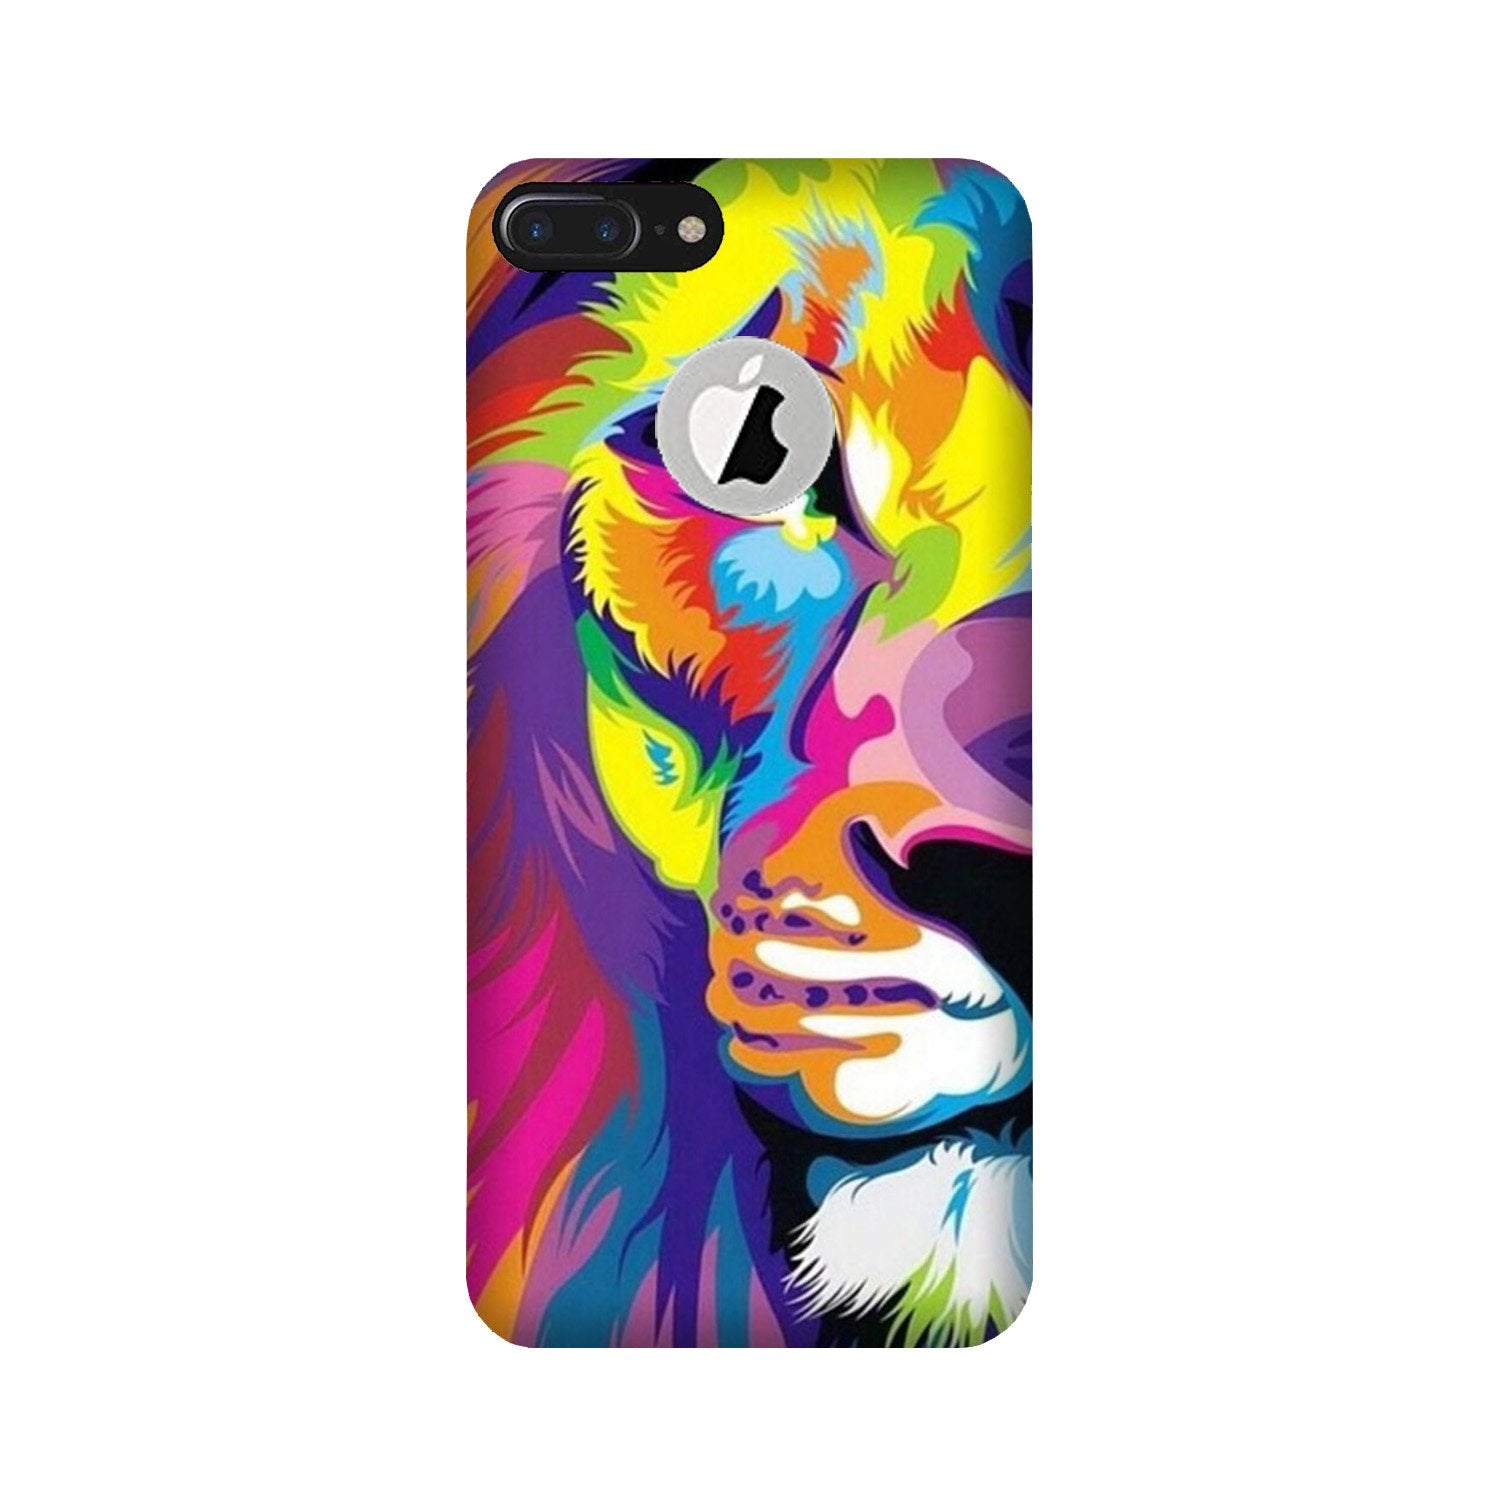 Colorful Lion Case for iPhone 7 Plus logo cut(Design - 110)